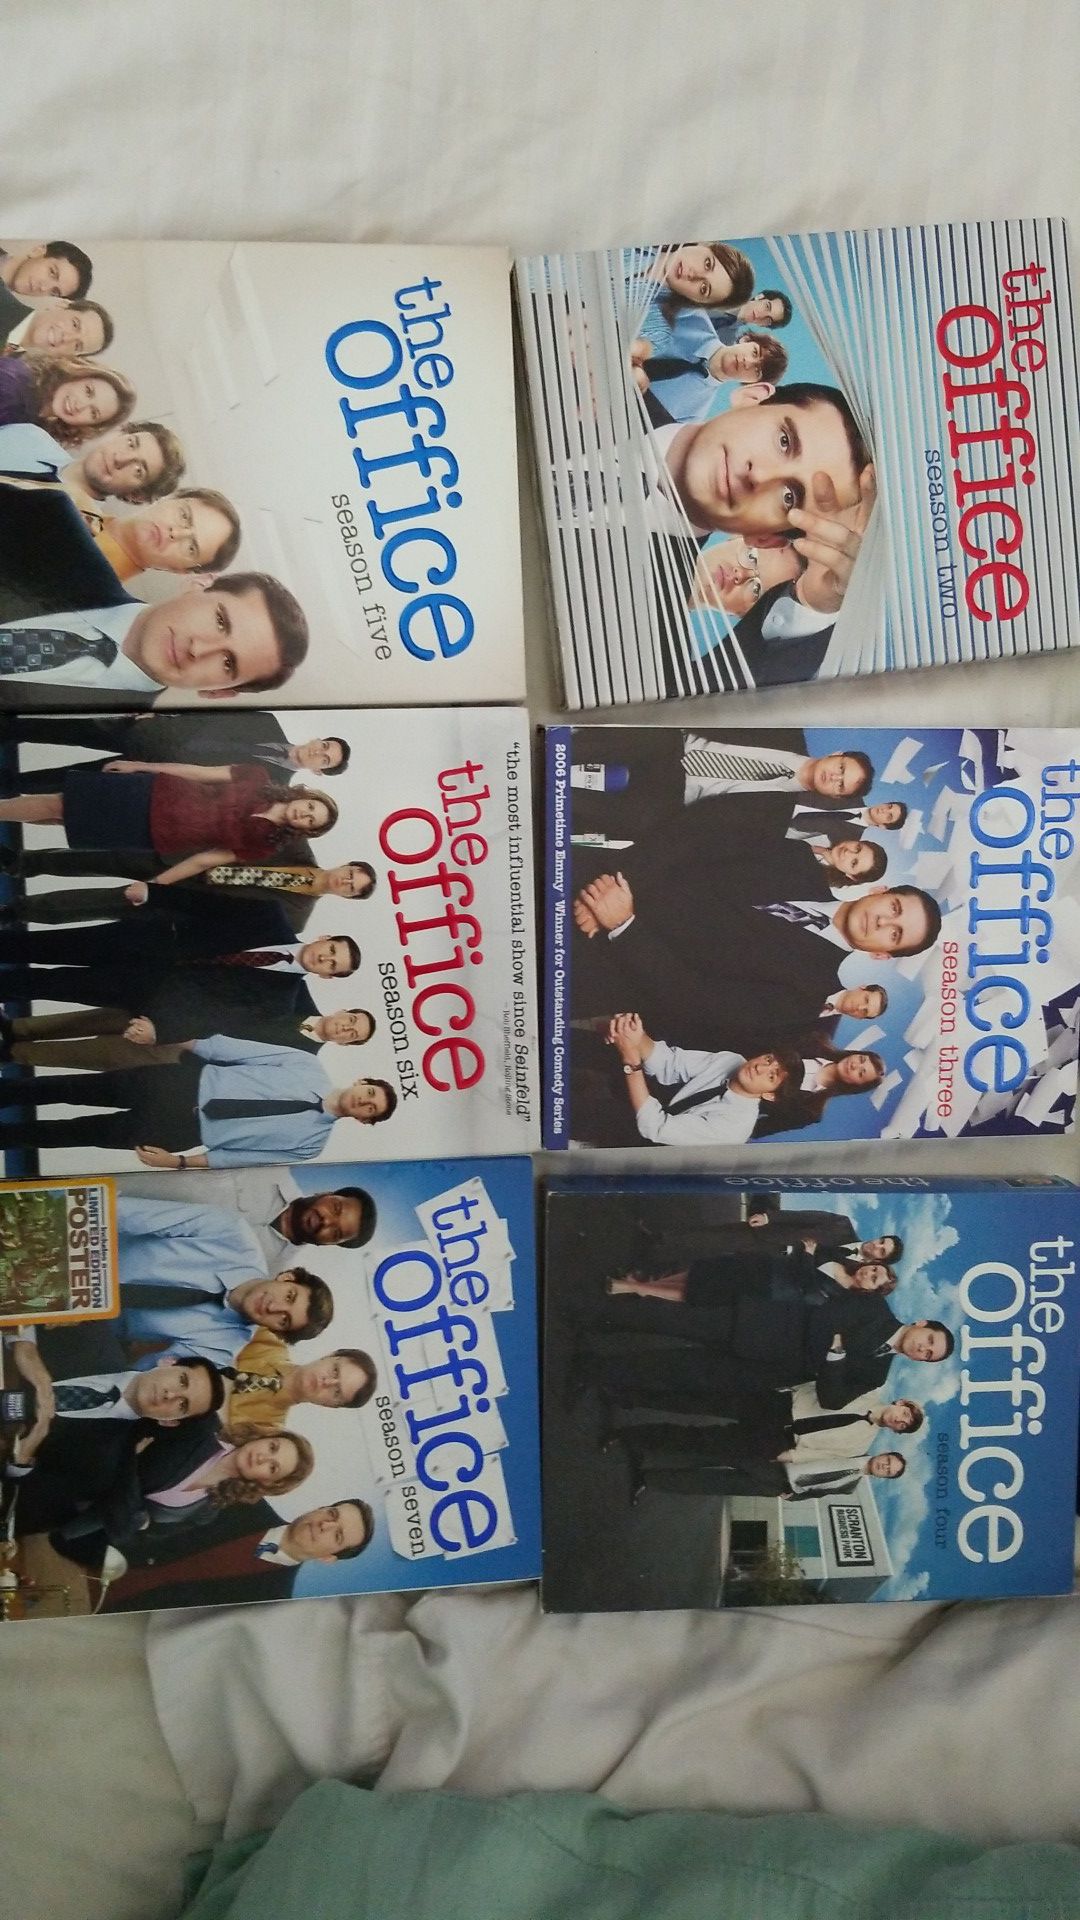 The Office season 2-7